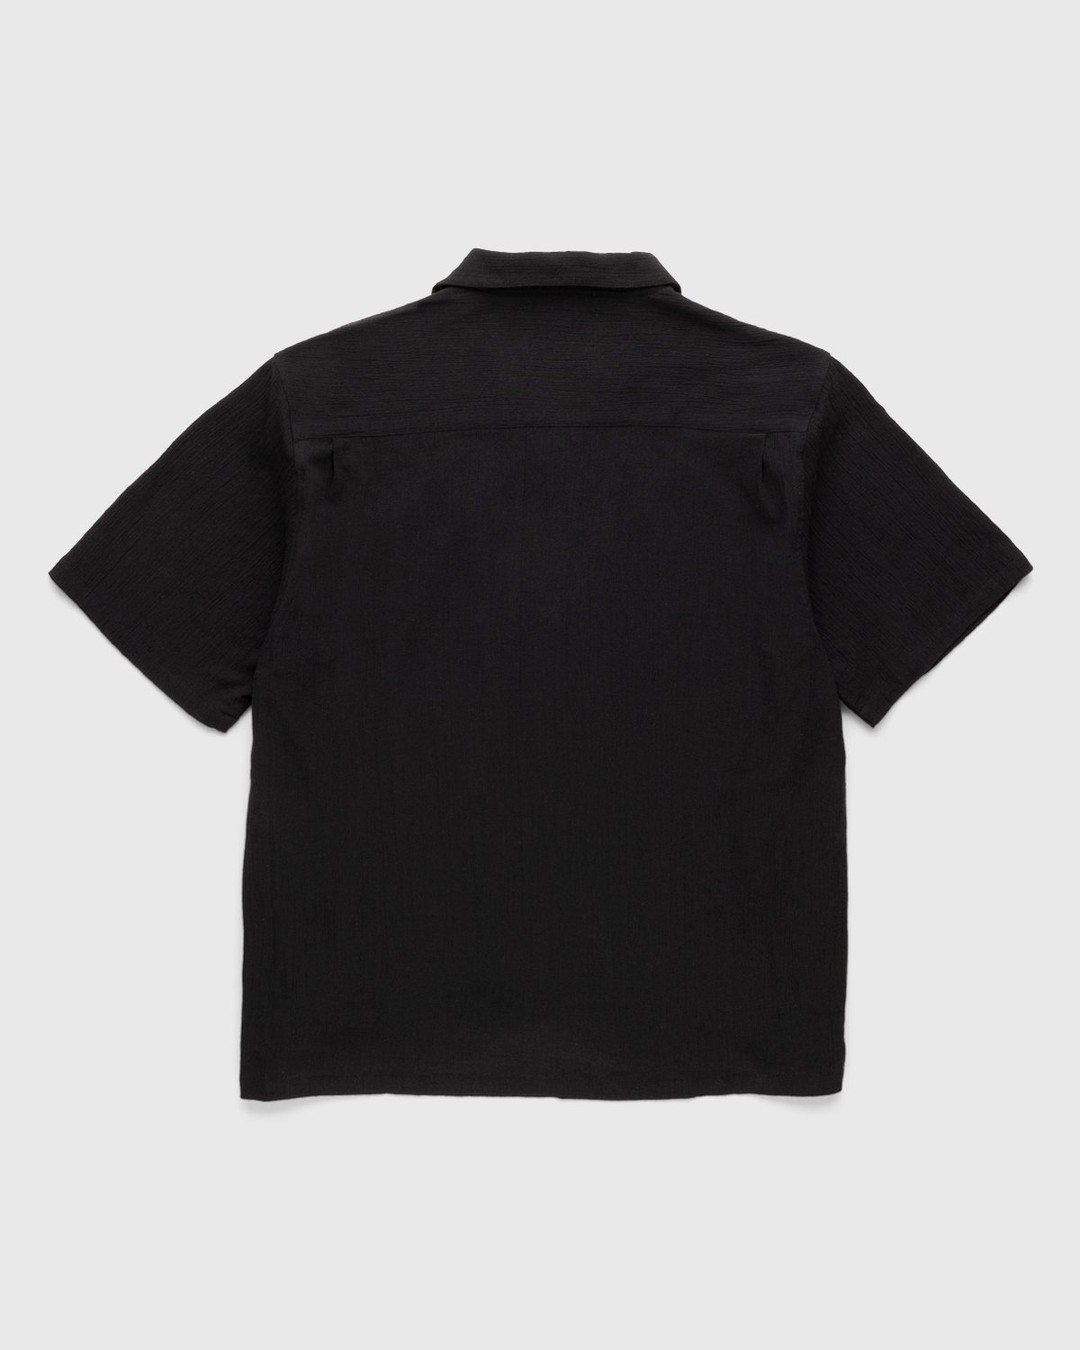 Highsnobiety – Crepe Short Sleeve Shirt Black - Shirts - Black - Image 2